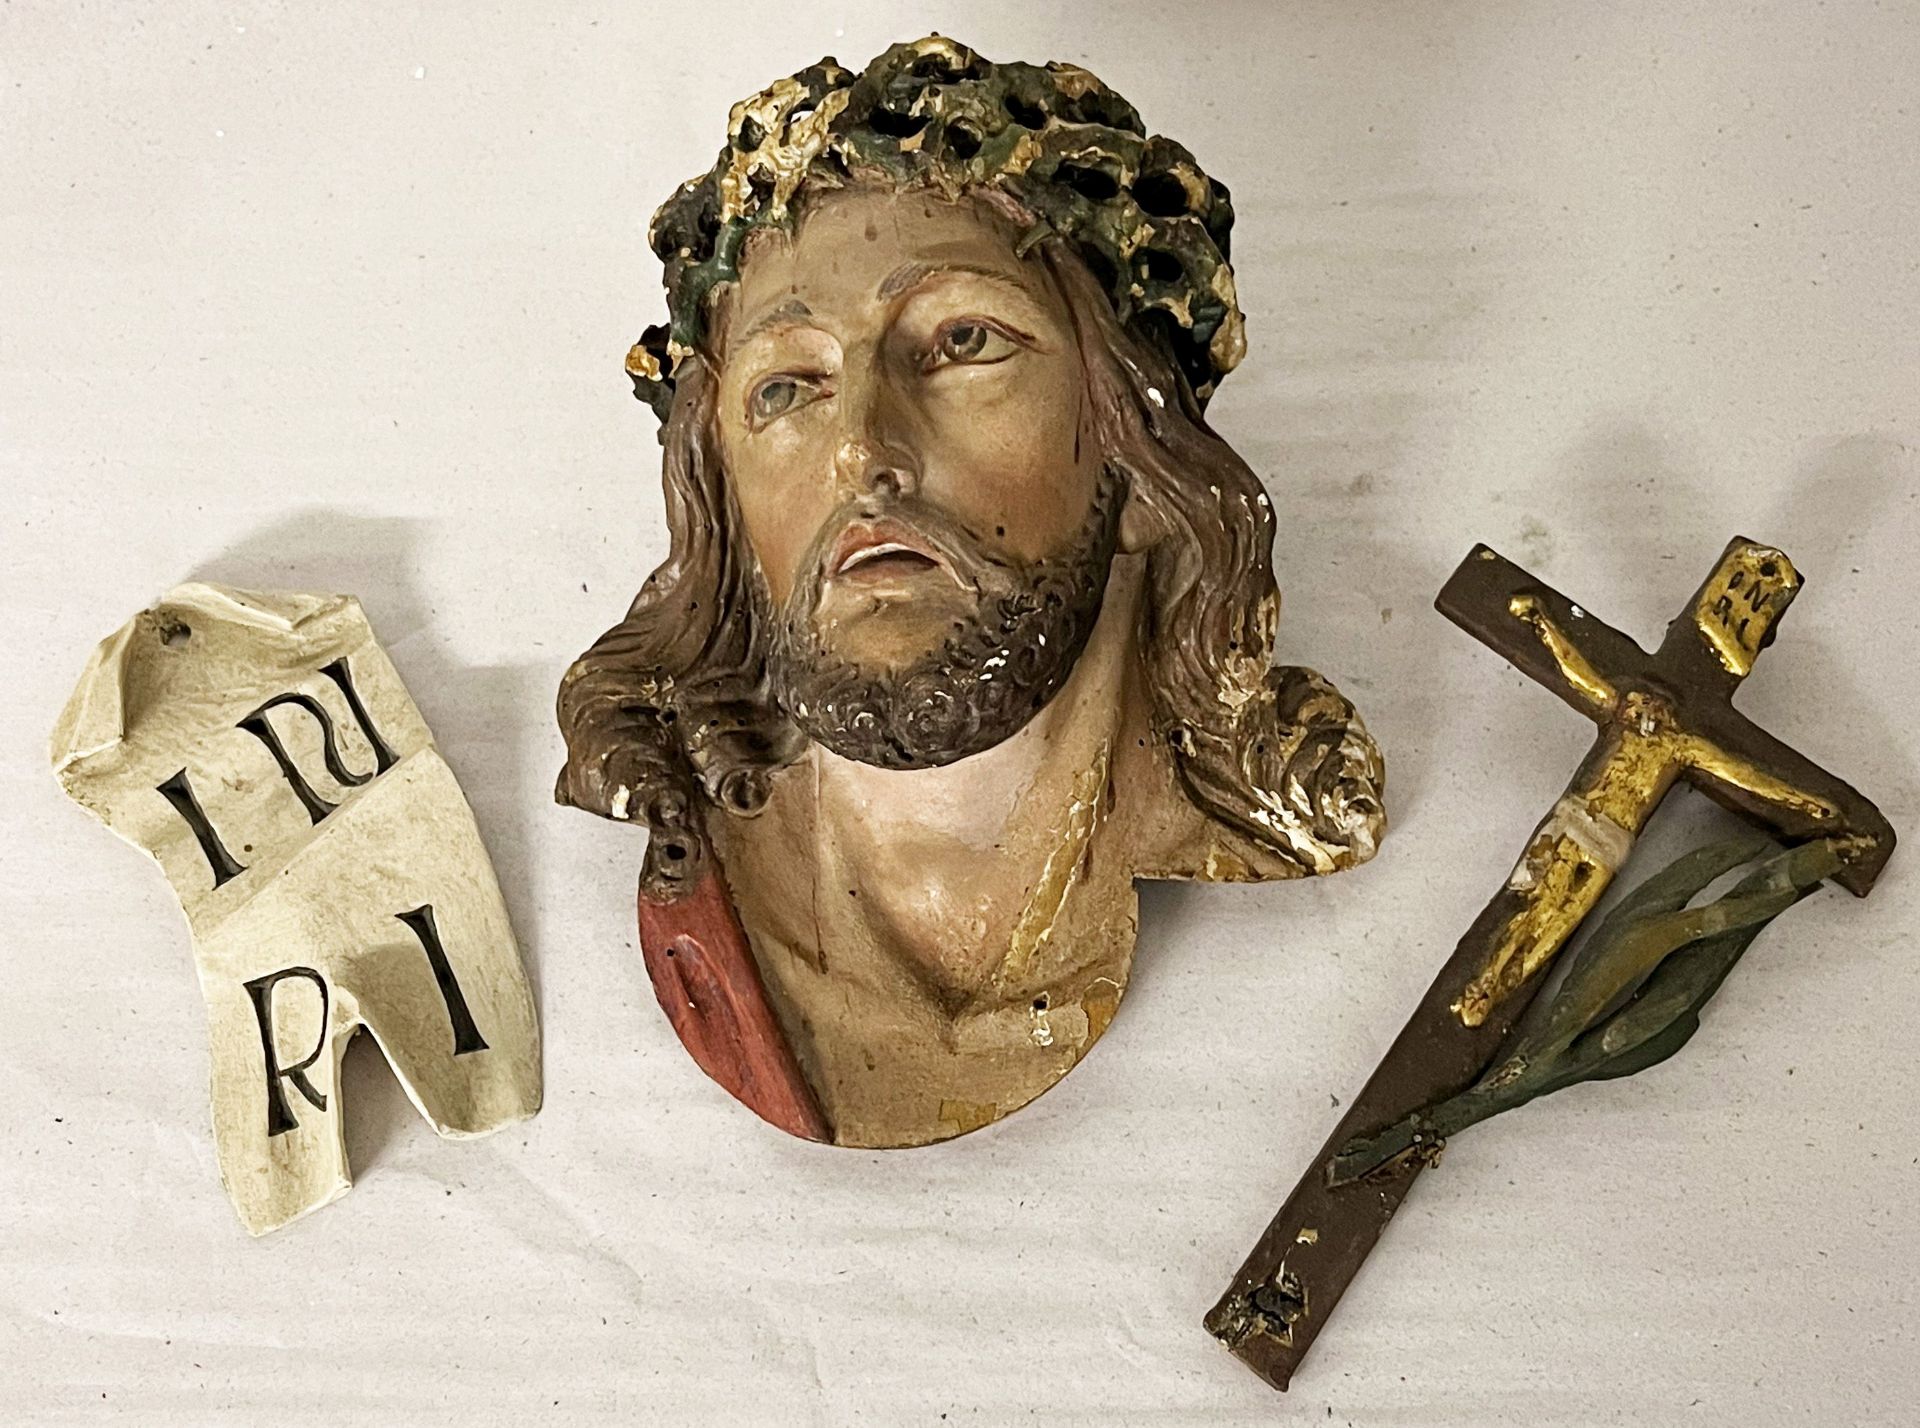 Christuskopf/ head of Christ. 19. Jh., farbig gefasst, H. 22 cm. Dazu INRI Schild und ein